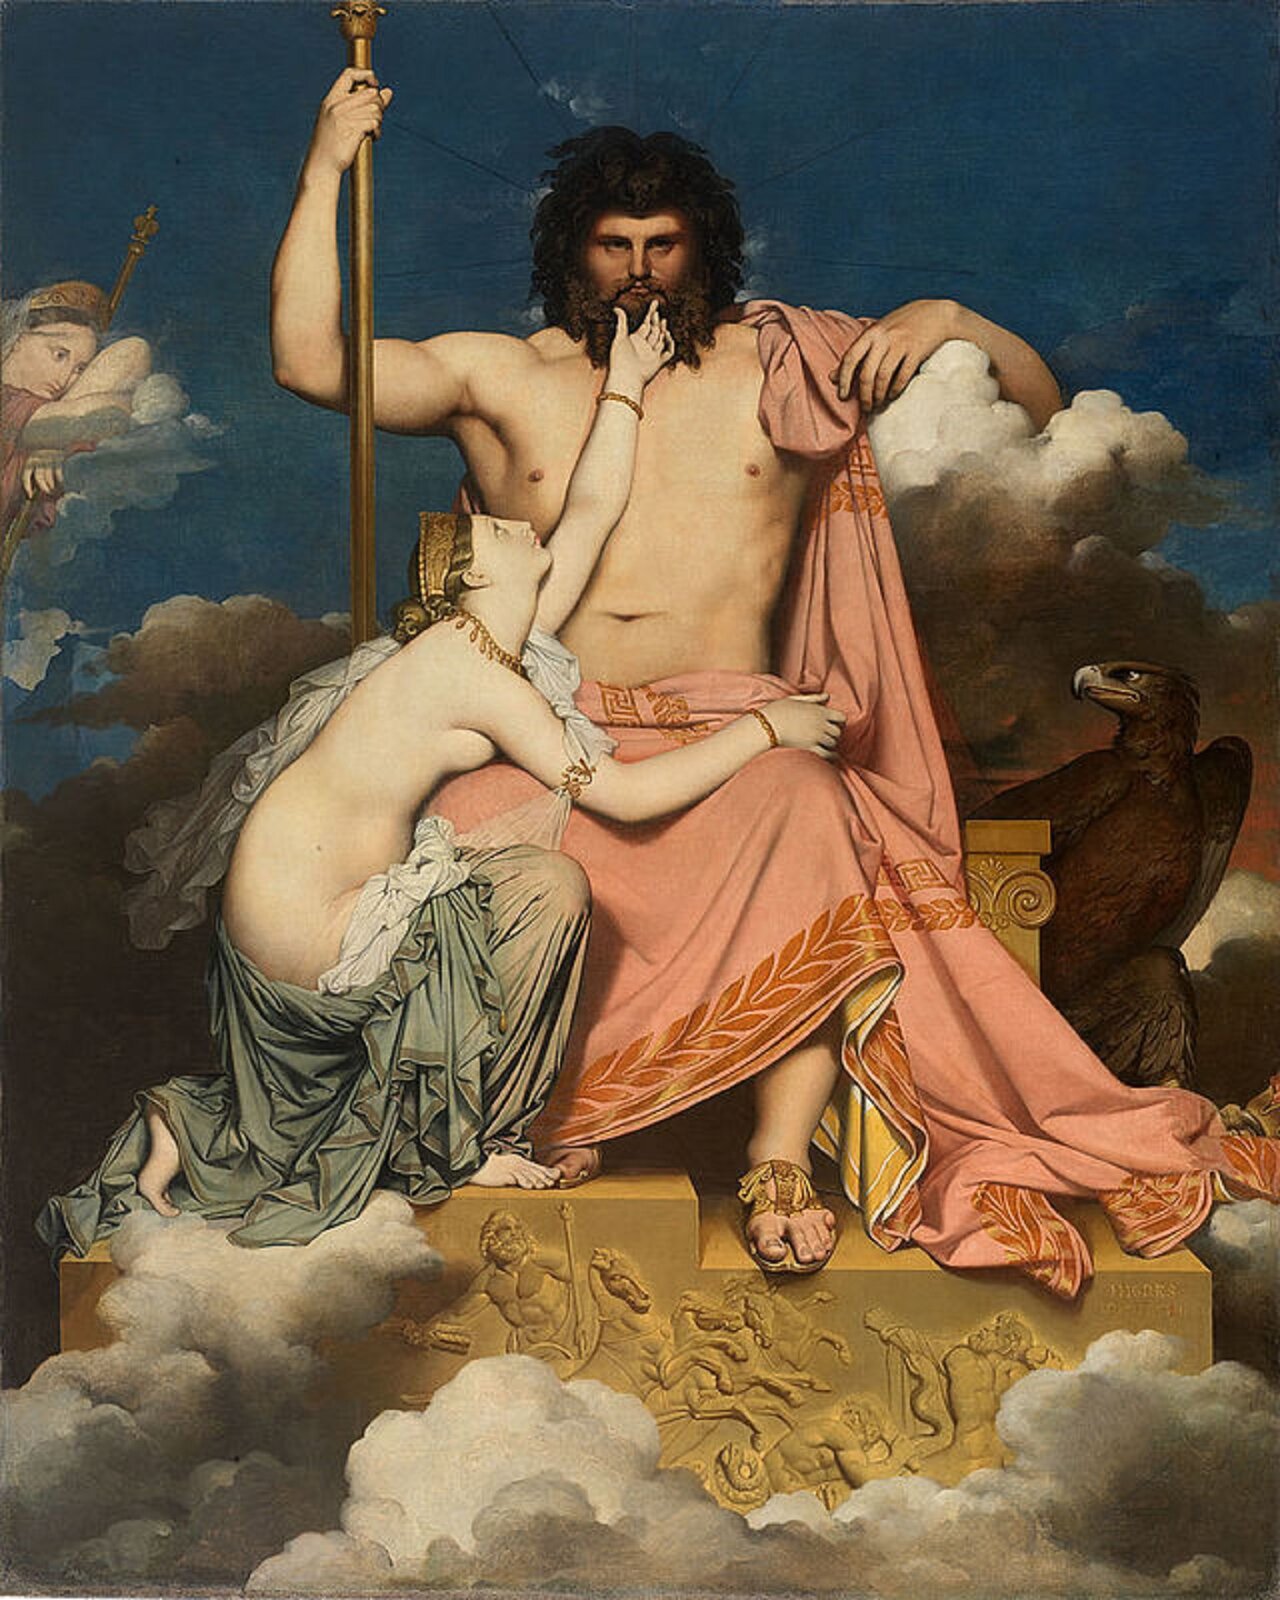 Ilustracja przedstawia dzieło Jean Auguste Dominique Ingres pt. "Zeus i Tetyda". Na kamiennym tronie, w chmurach, siedzi potężny mężczyzna, ma czarne, bujne włosy i czarną brodę. Ubrany jest w różową szatę, przepasaną przez biodra i jedno ramię oraz złote sandały. Patrzy przed siebie. U stóp, wsparta o jego kolano, klęczy półnaga kobieta, szara szata zakrywa jej nogi. Ma wyciągniętą lewą rękę, dłoń trzyma na twarzy Zeusa, prawą rękę ma położoną na jego kolanach. Głowę ma wyciągniętą do góry, patrzy na twarz mężczyzny.